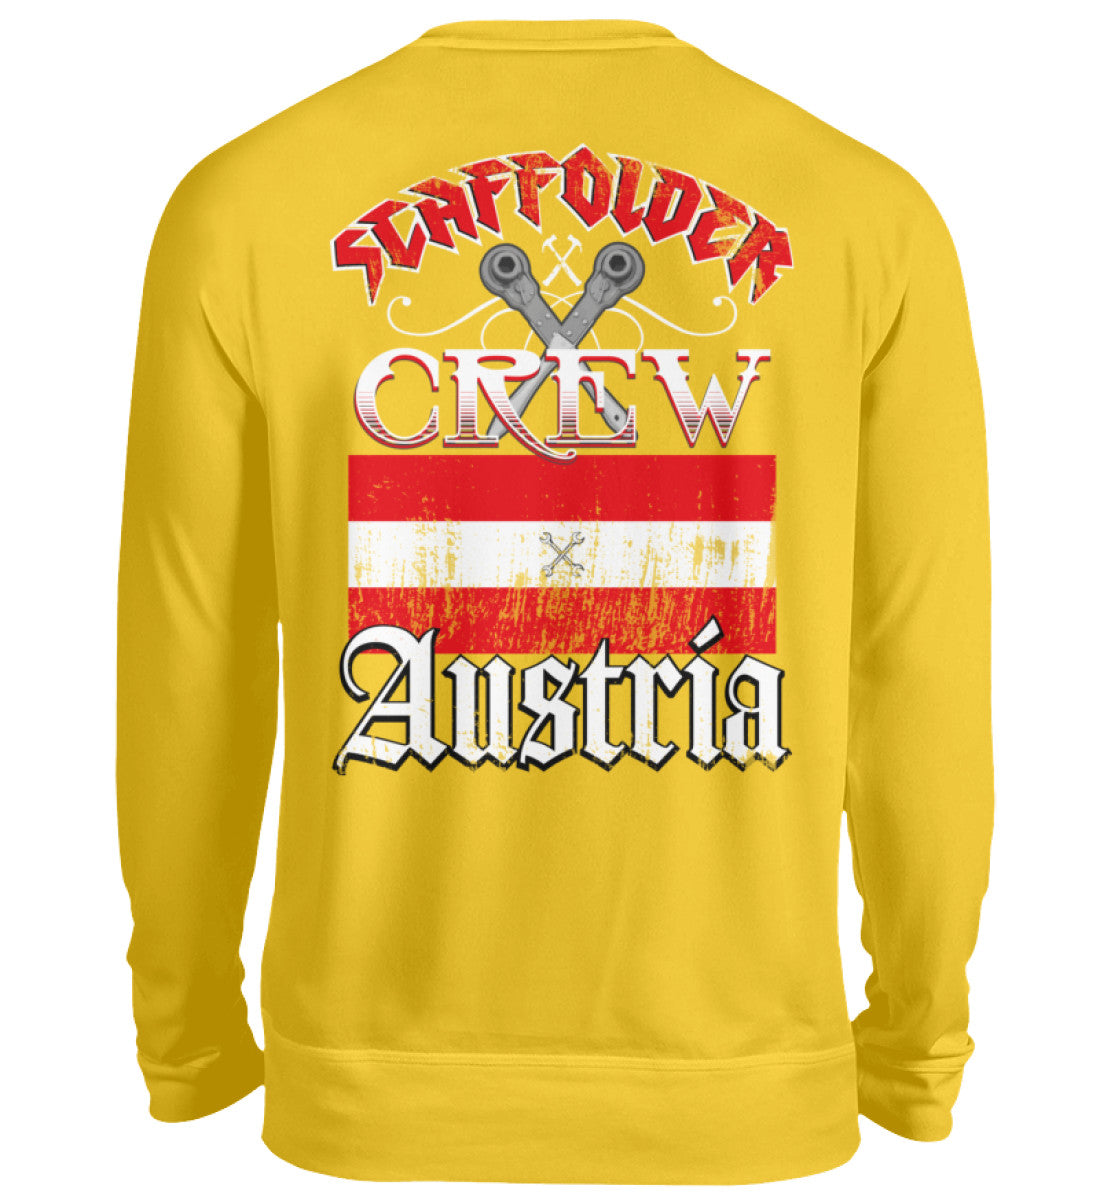 Scaffolder Crew Austria €32.95 Gerüstbauer - Shop >>